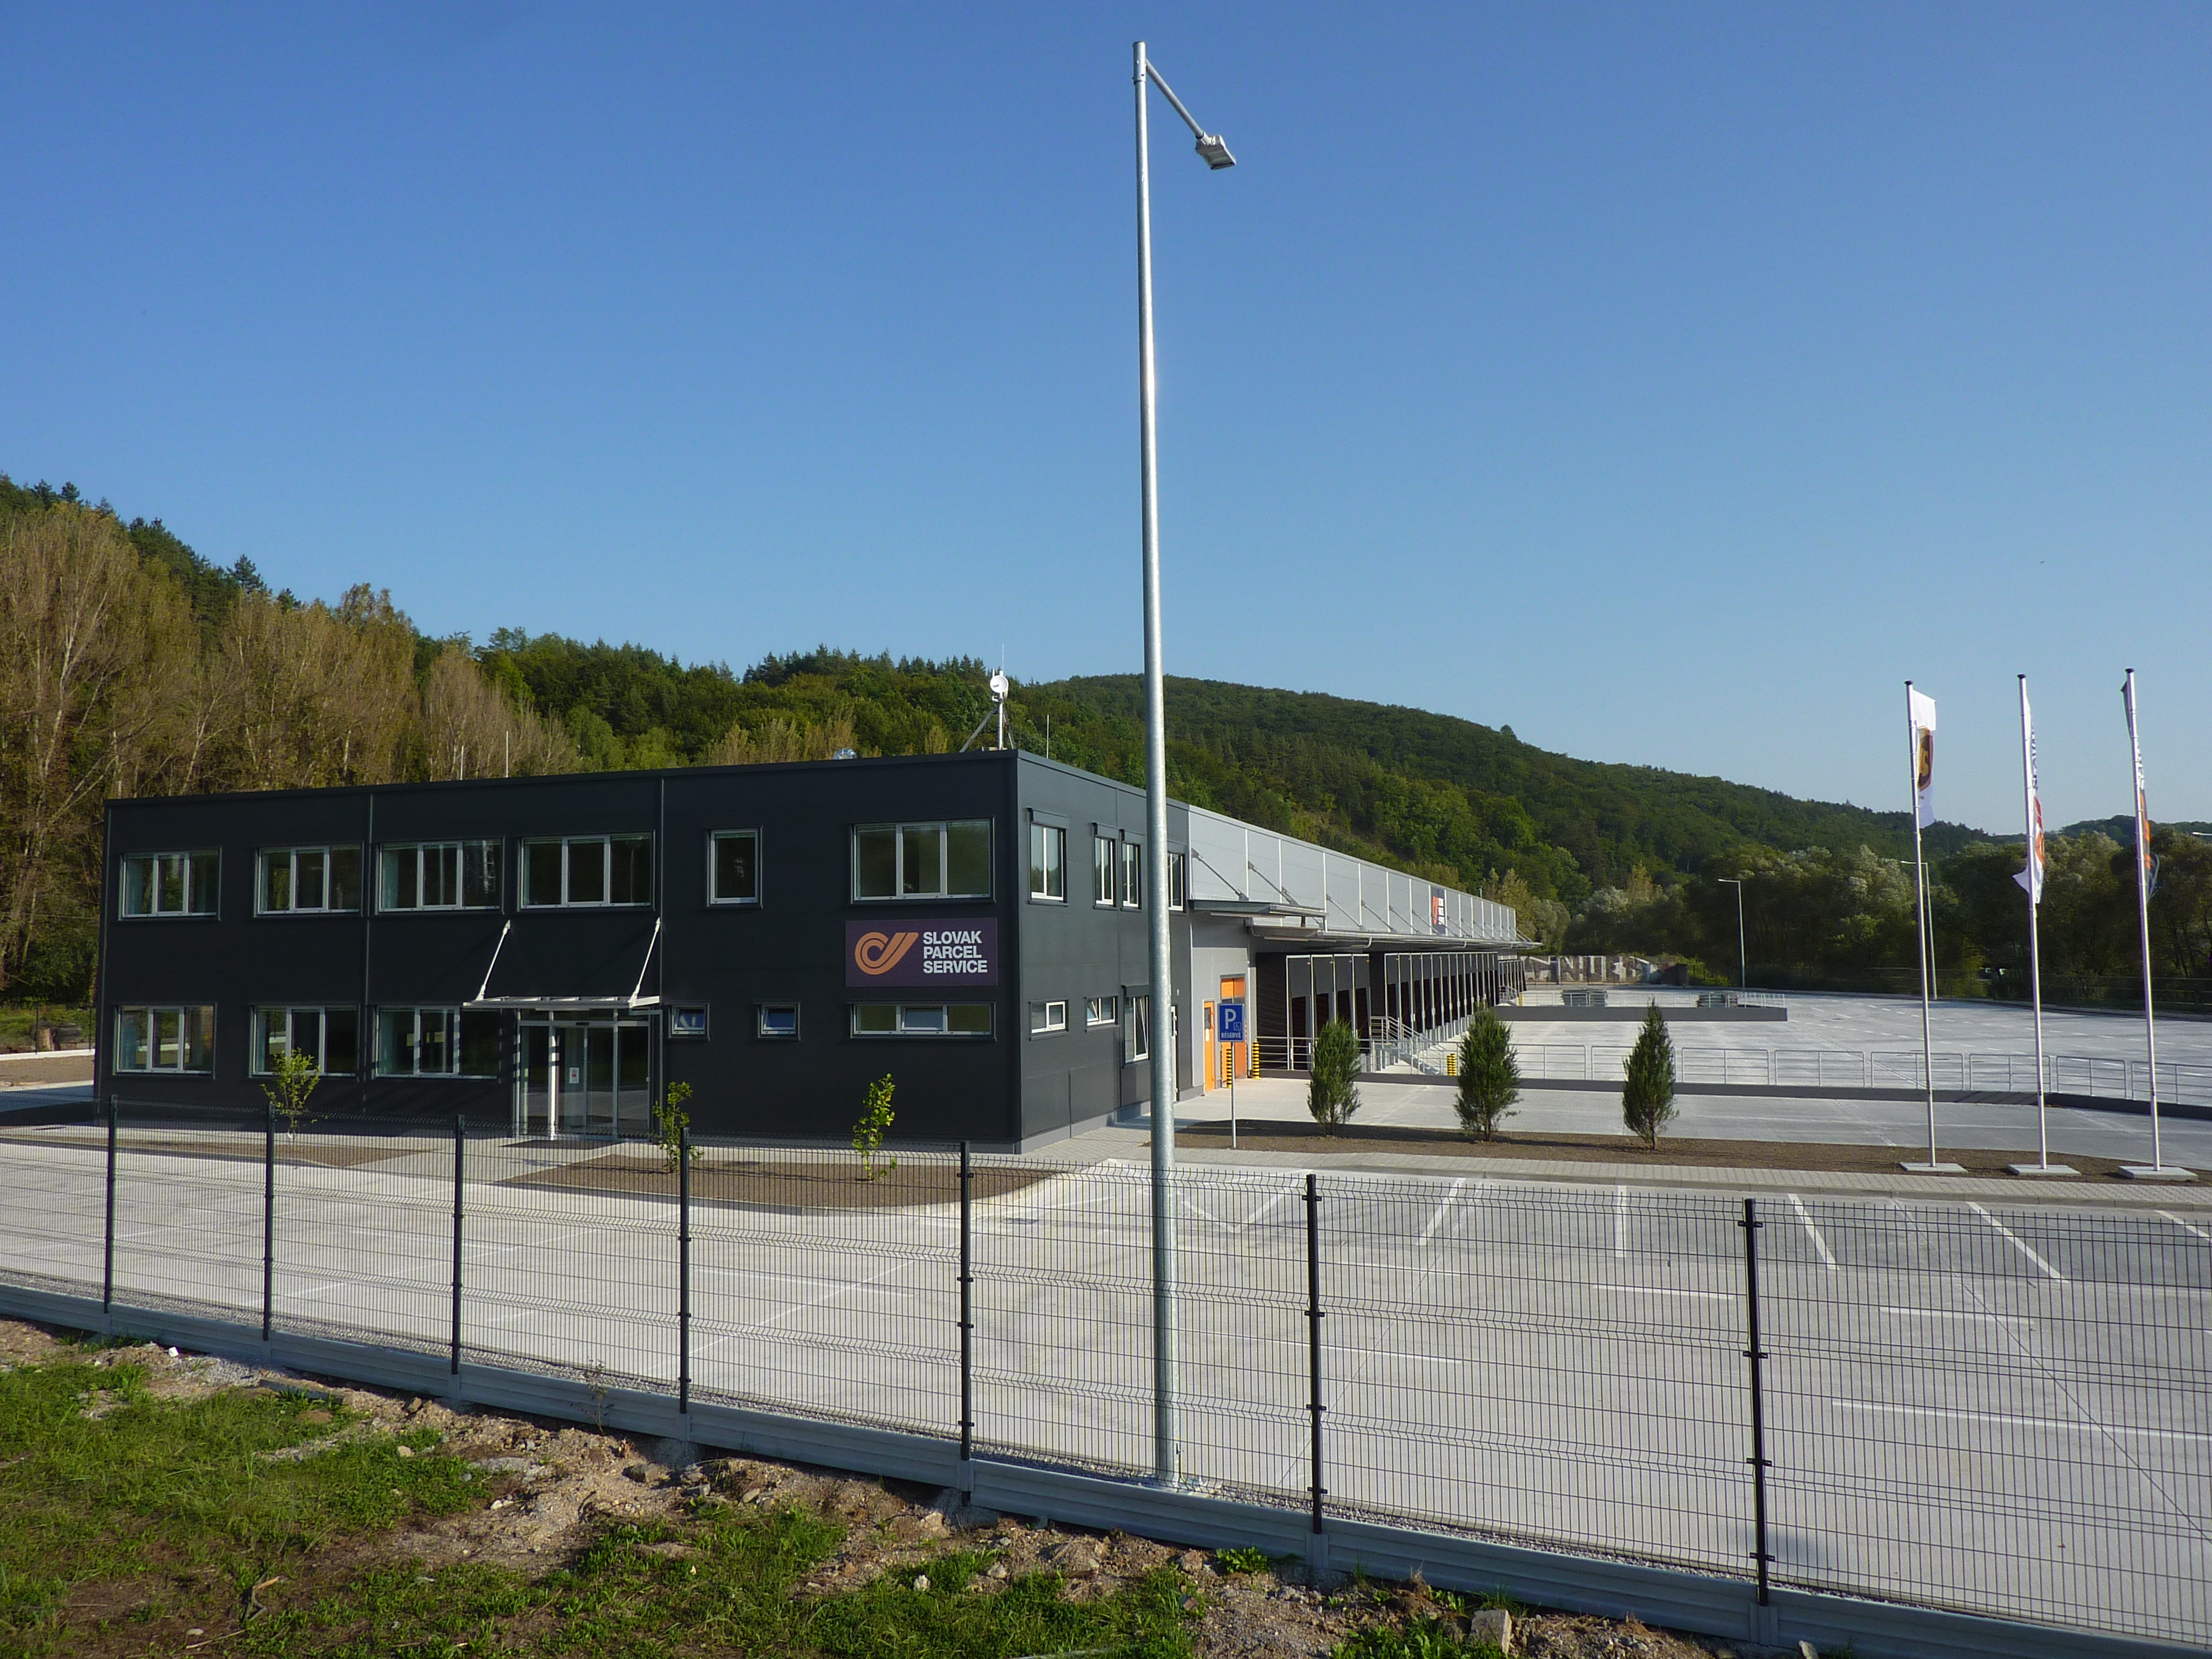 Distribučné centrum SPS Banská Bystrica / logistické areály, sklady - Building construction